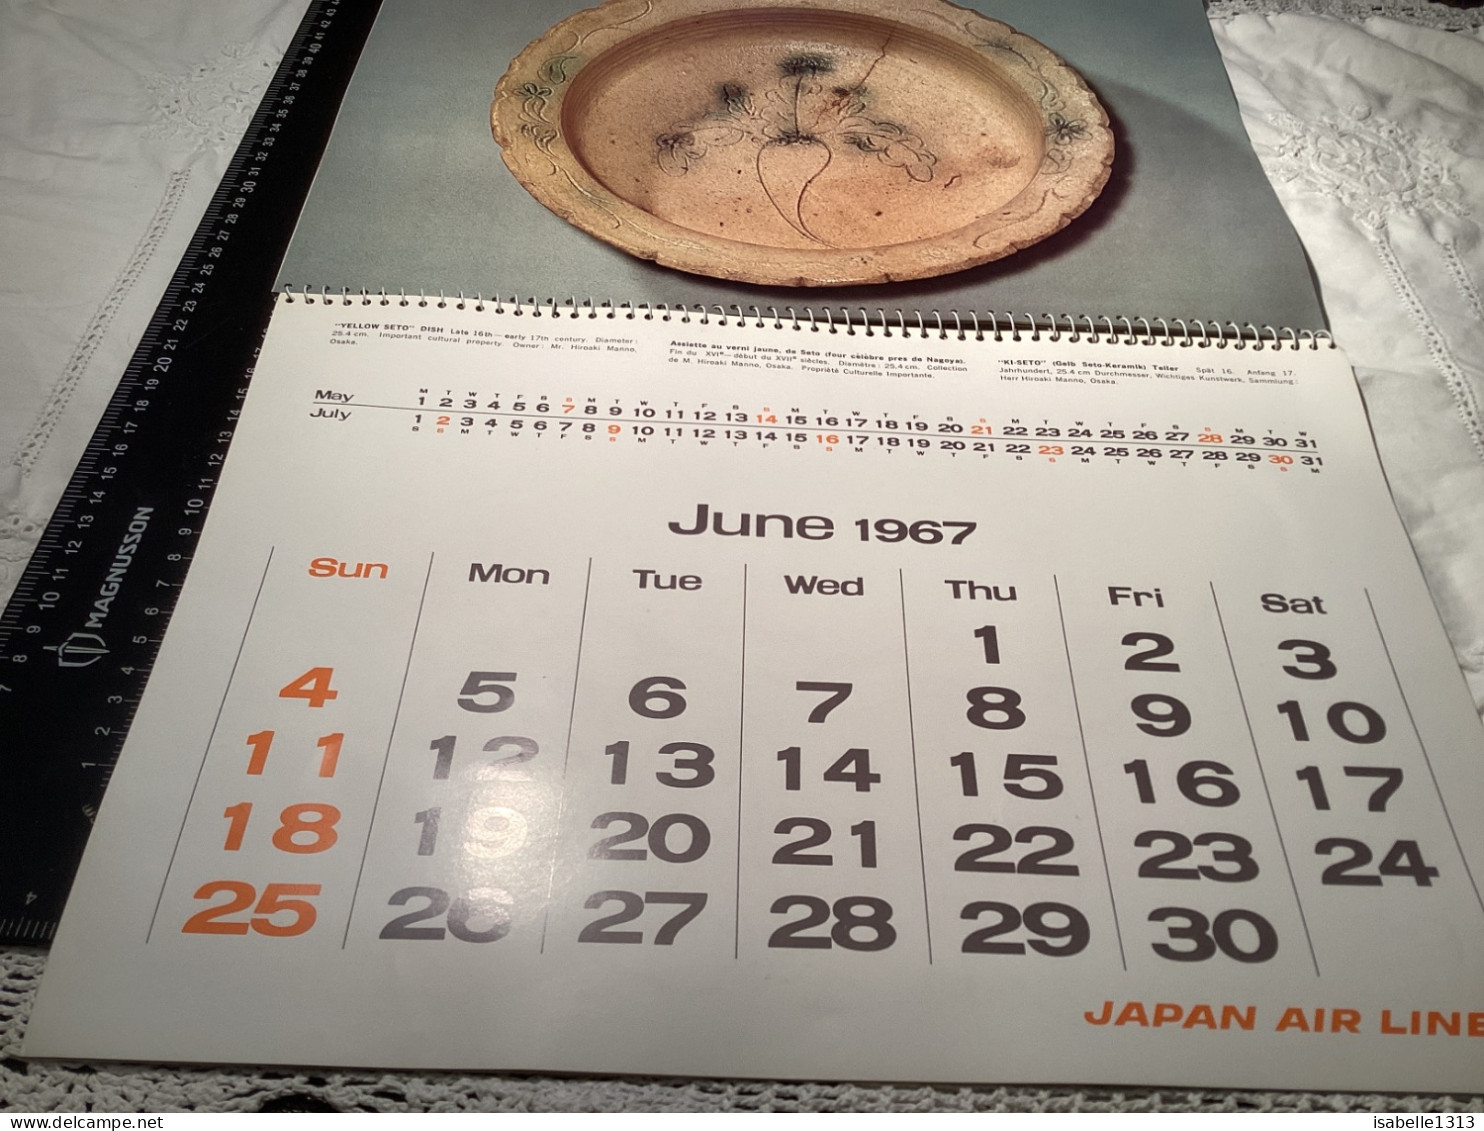 Calendrier Japon publicité touristique d’avion, 1967, Japan, Airlines, Japon, air lines calendrier